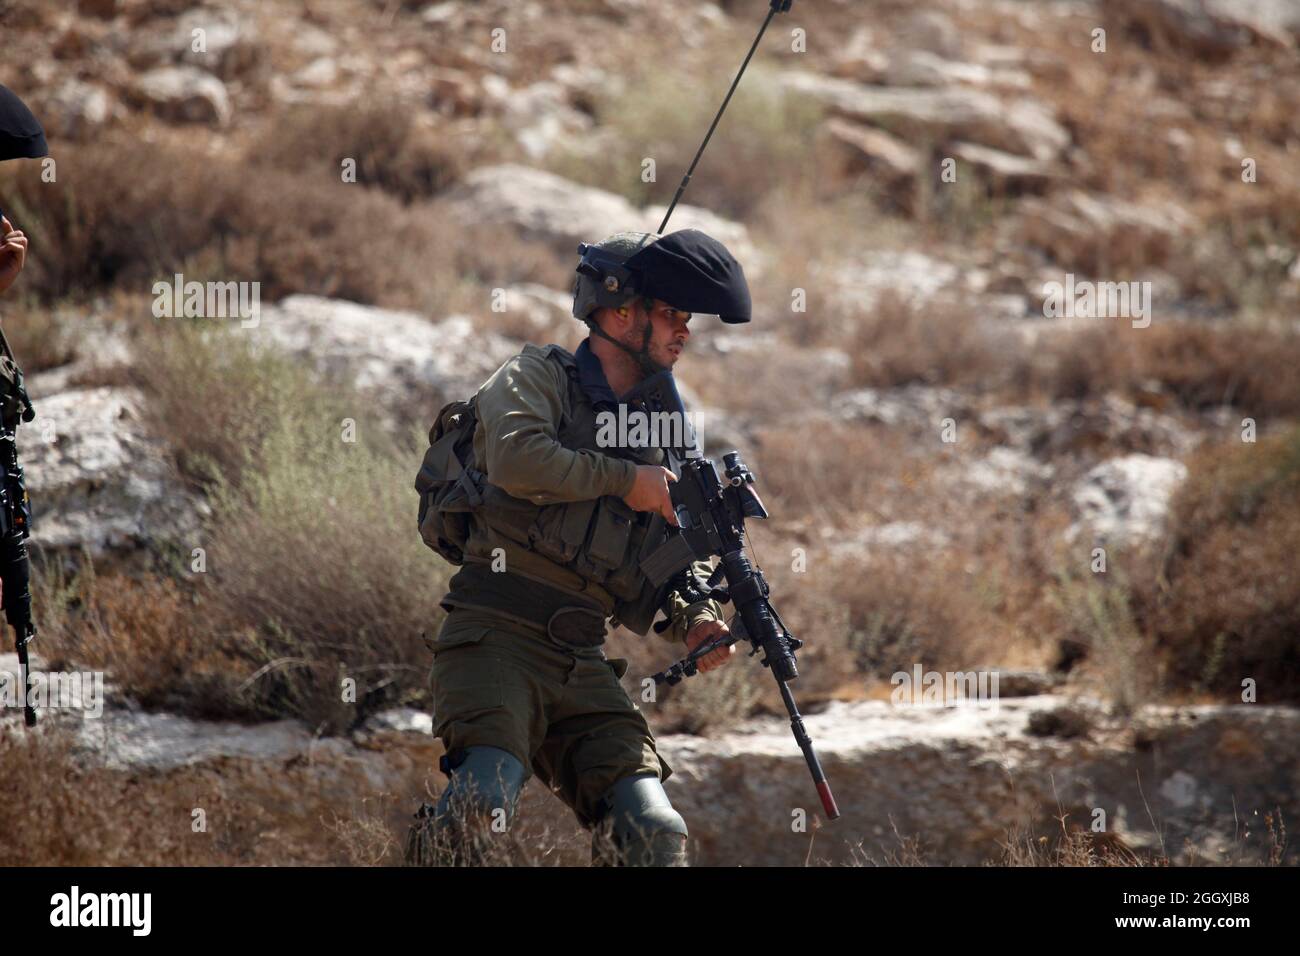 Israelische Soldaten nehmen während einer Demonstration gegen israelische Siedlungen im Dorf Beit Dajan in der Nähe der Stadt Nablus im Westjordanland Stellung. Stockfoto